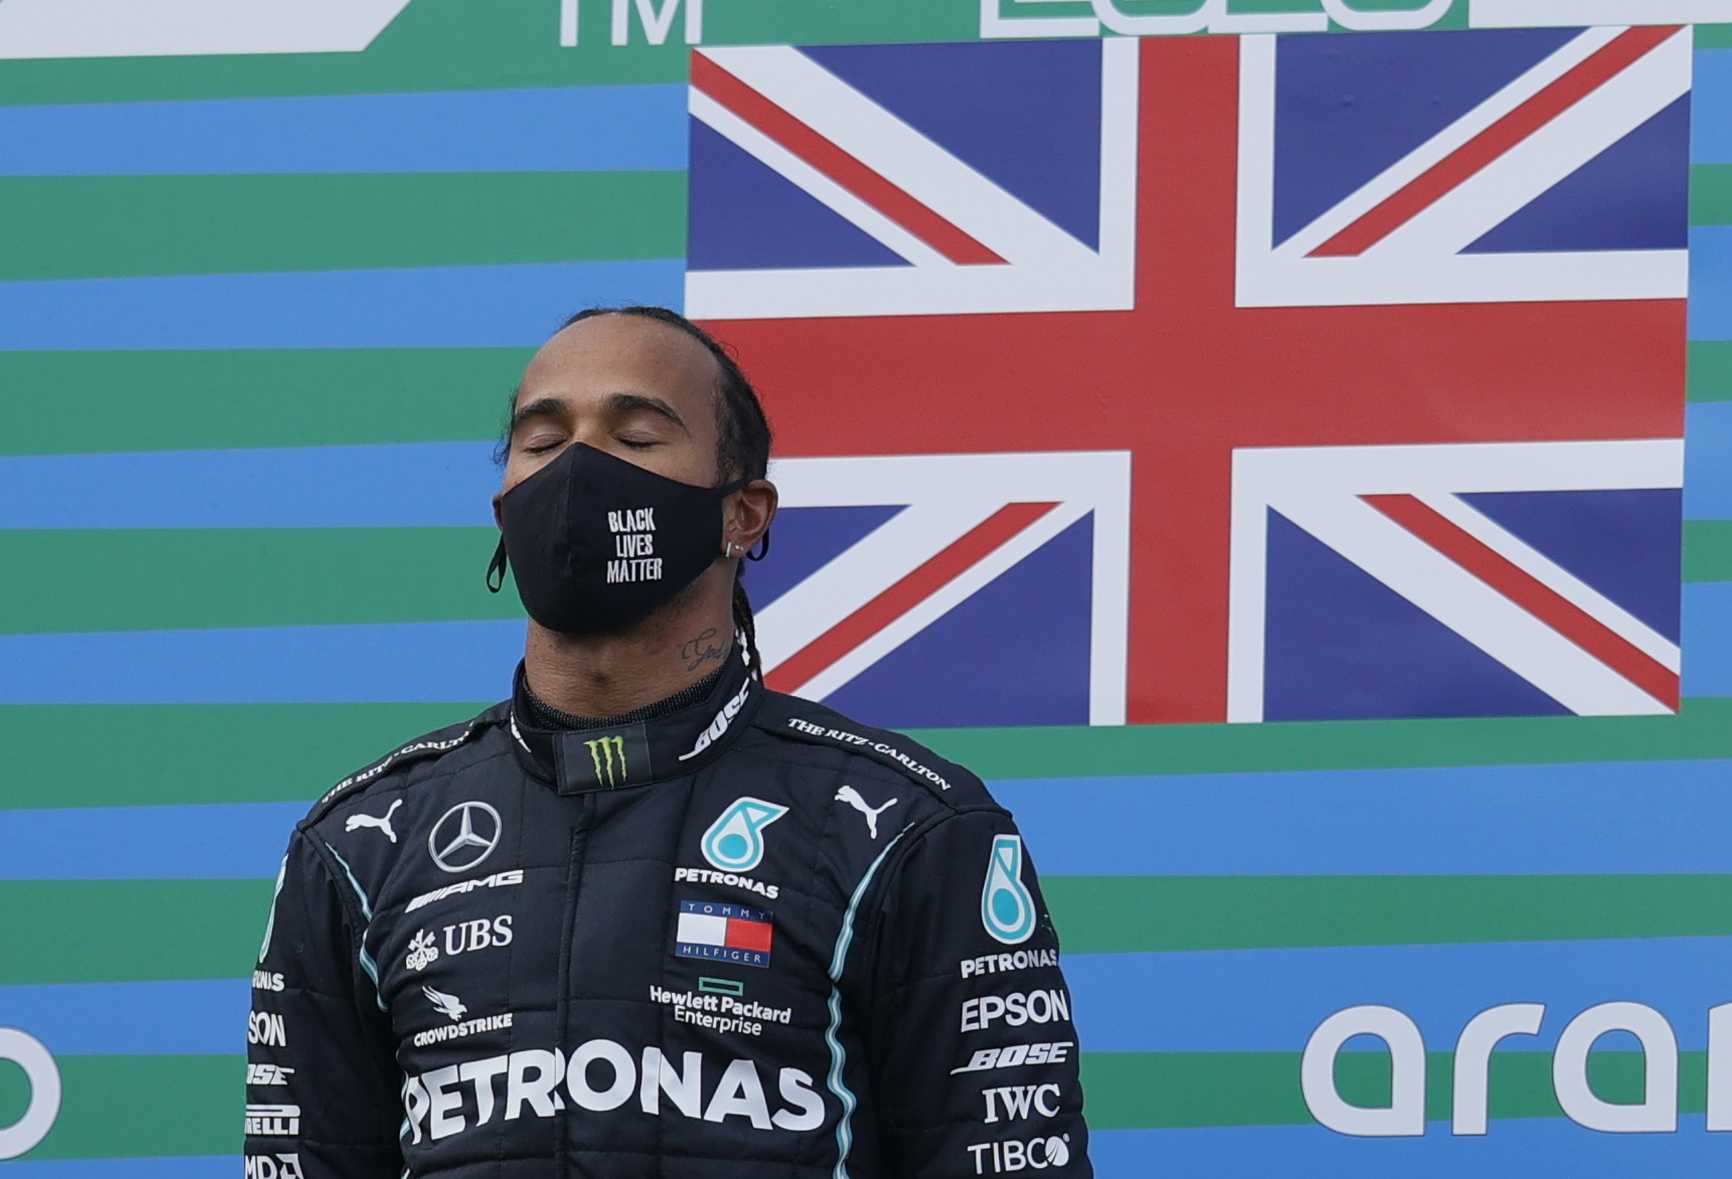 Lewis Hamilton publie un message encourageant soulignant l'esprit d'équipe de Mercedes F1